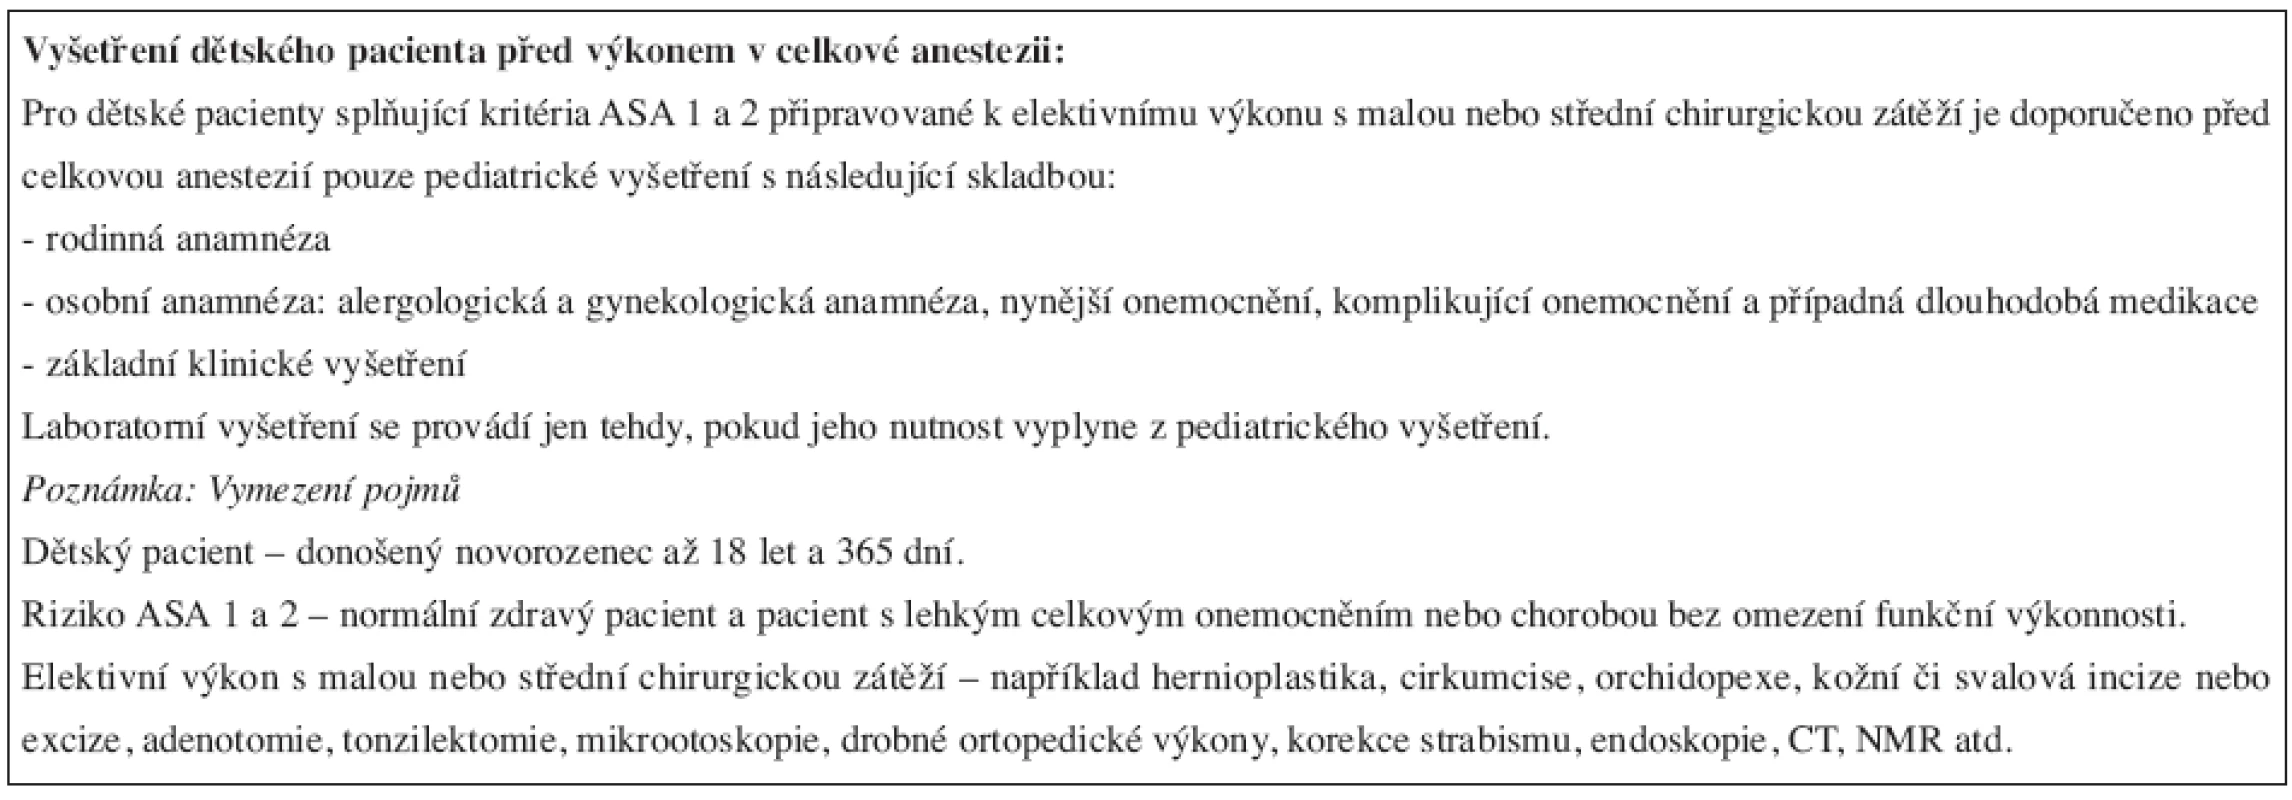 Doporučení ČSARIM pro vyšetření dětského pacienta před výkonem v celkové anestezii (6. 11. 2006).